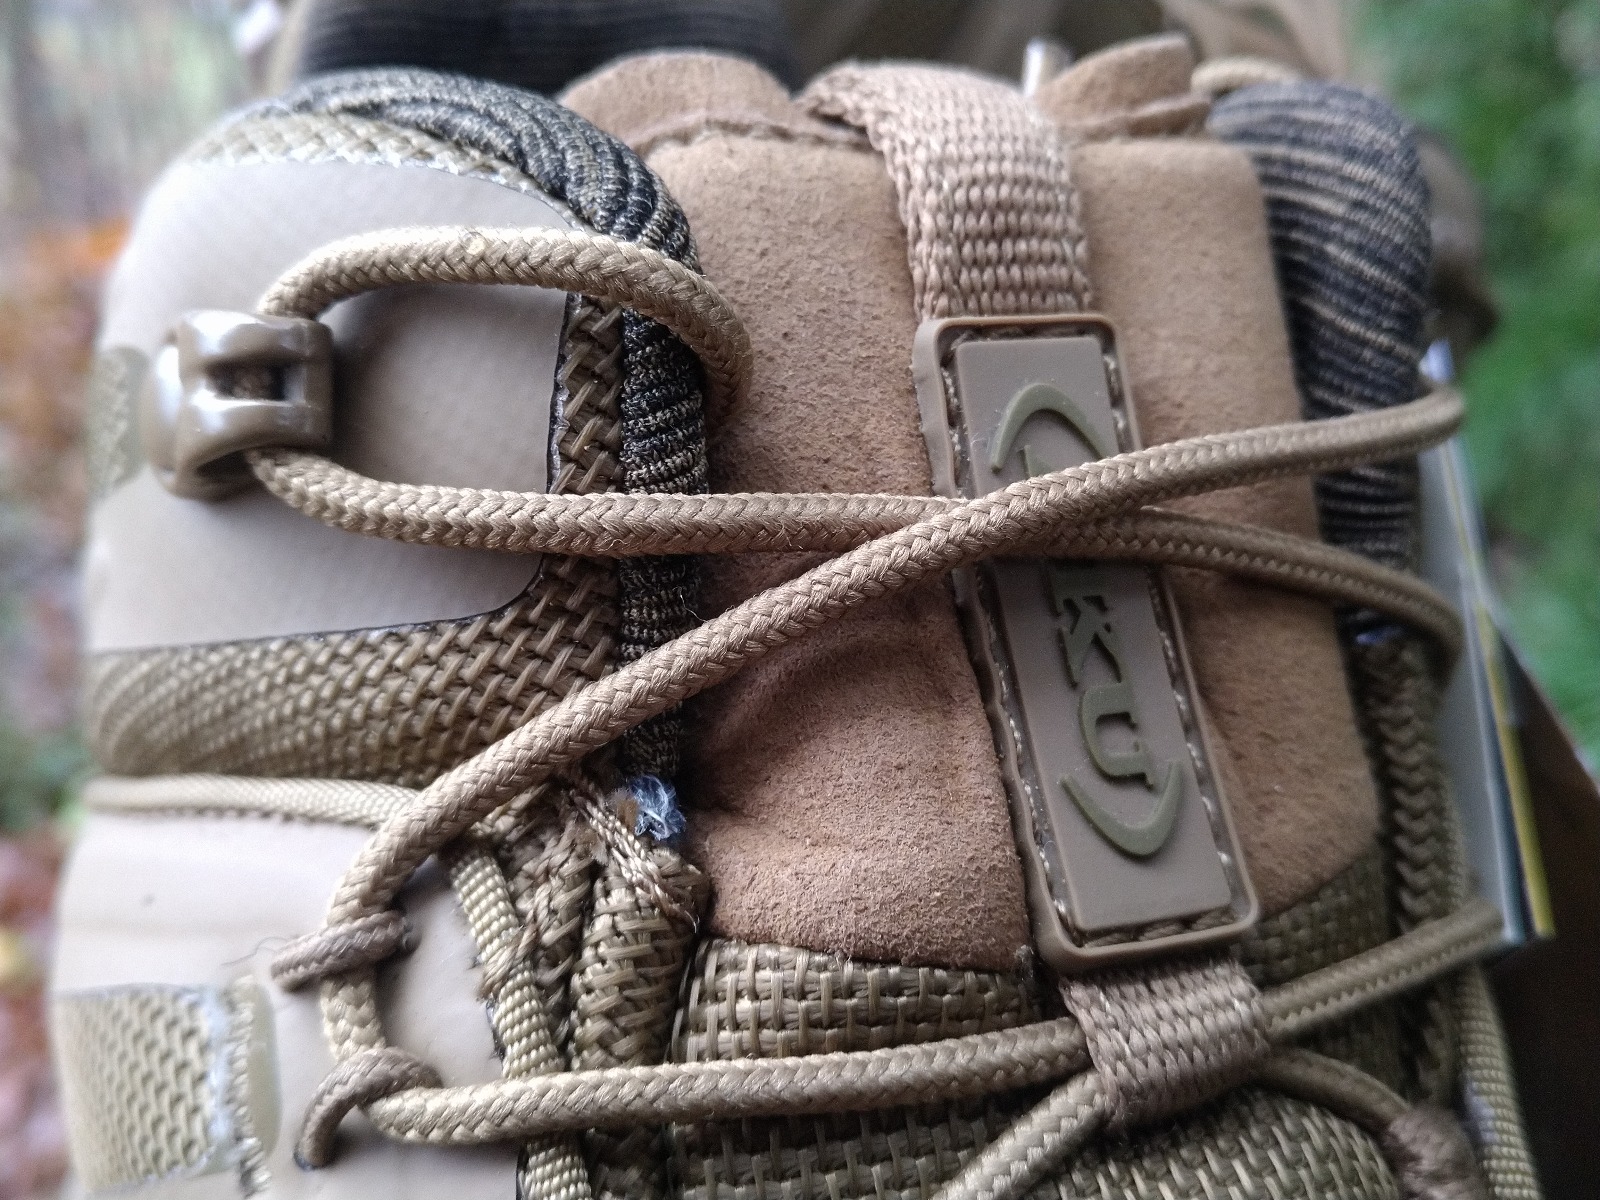 Selvatica Tactical Mid GTX, AKU TACTICAL, AKU, taktični škorenji, taktični čevlji, taktična obutev, obutev za urbano bojevanje, sof obutev, B33 Tactical, B33 army shop, army shop, trgovina z vojaško opremo, vojaška trgovina, trgovina z outdoor opremo